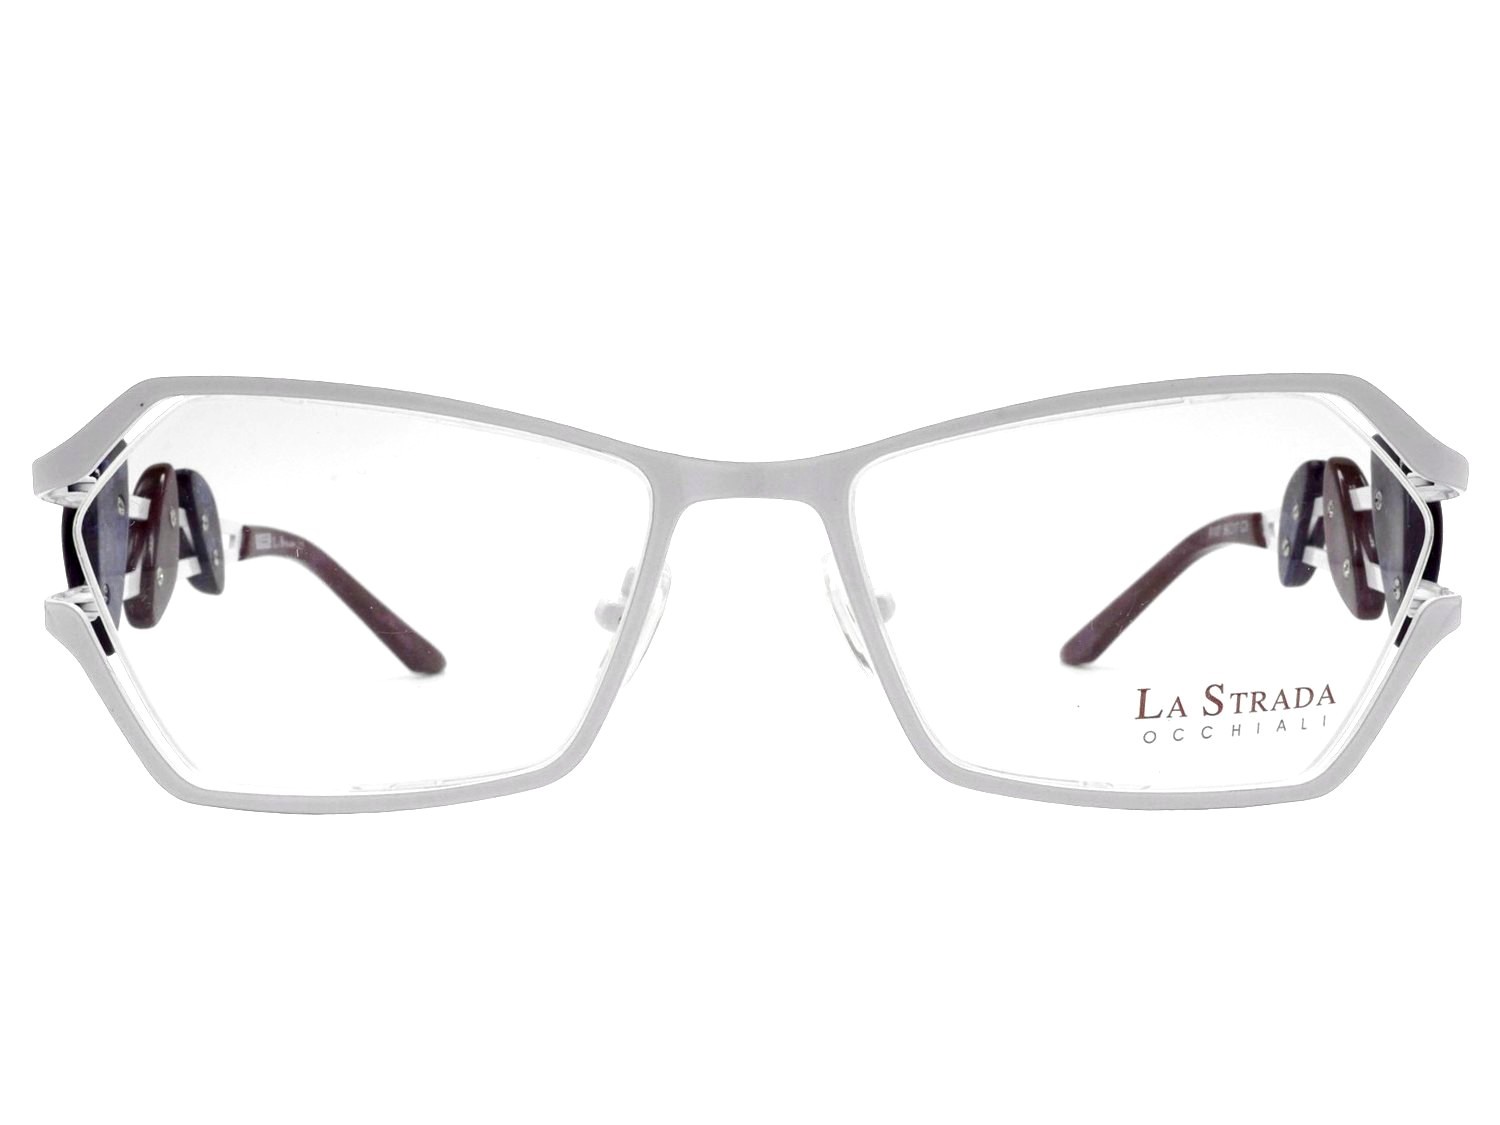 LaStrada 9107 3 occhiali